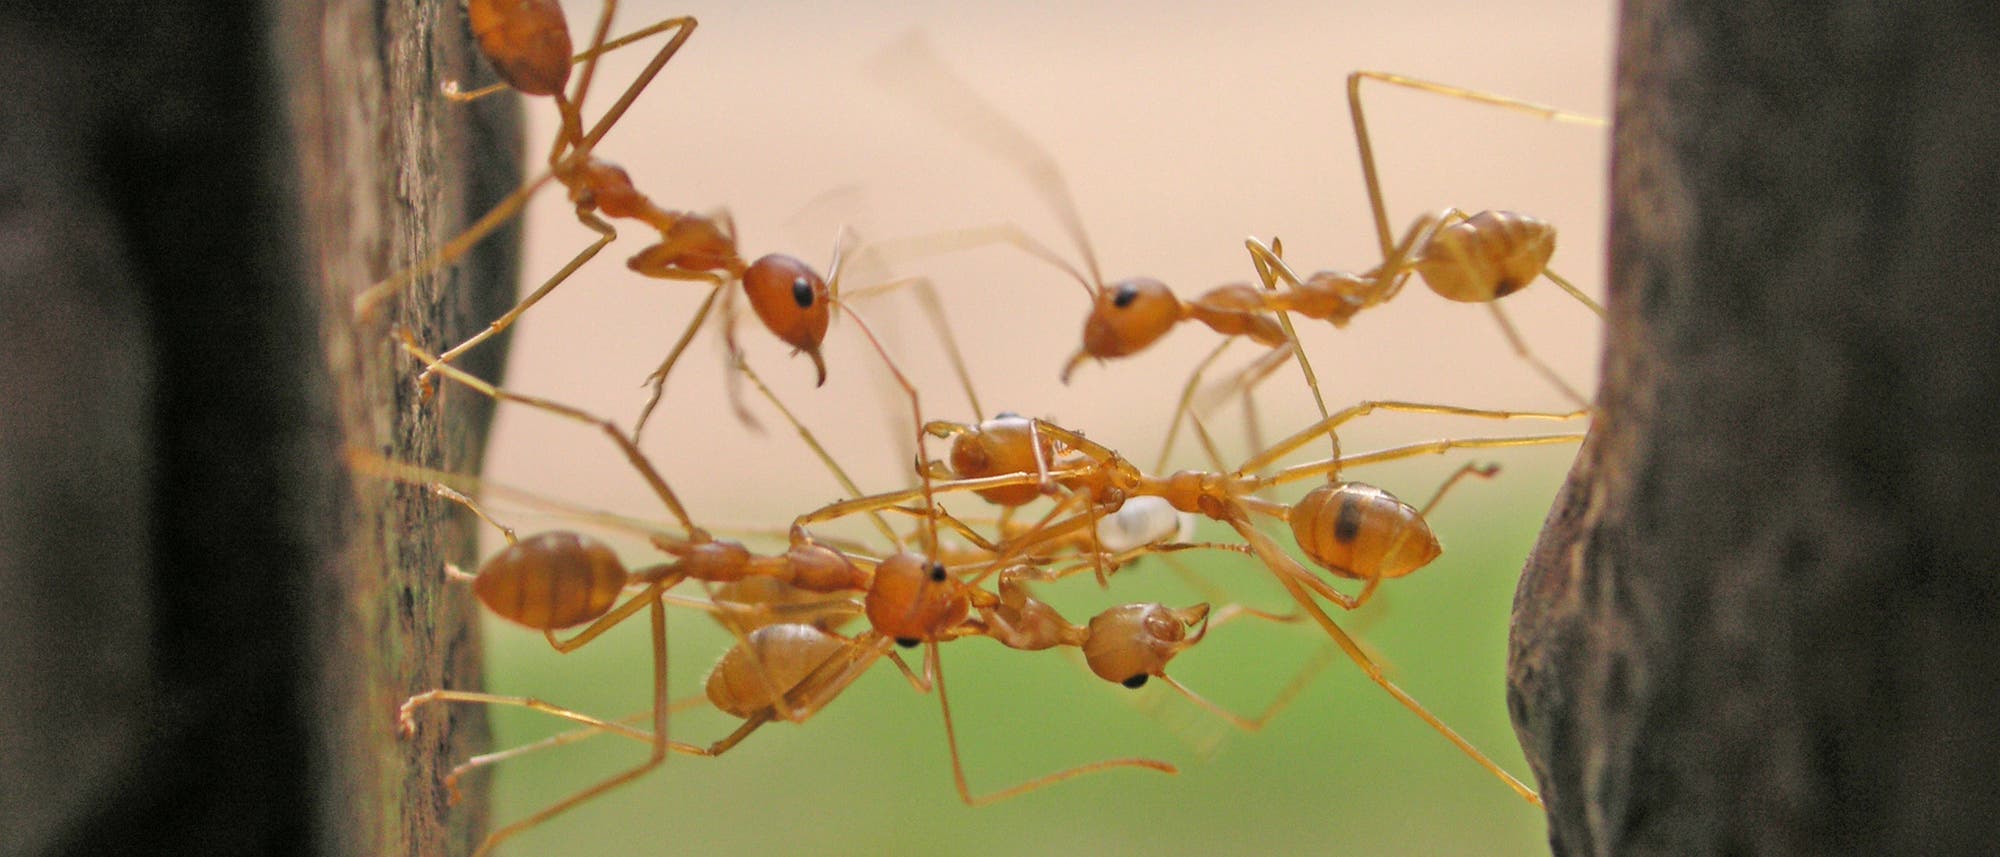 Kooperation bei Ameisen